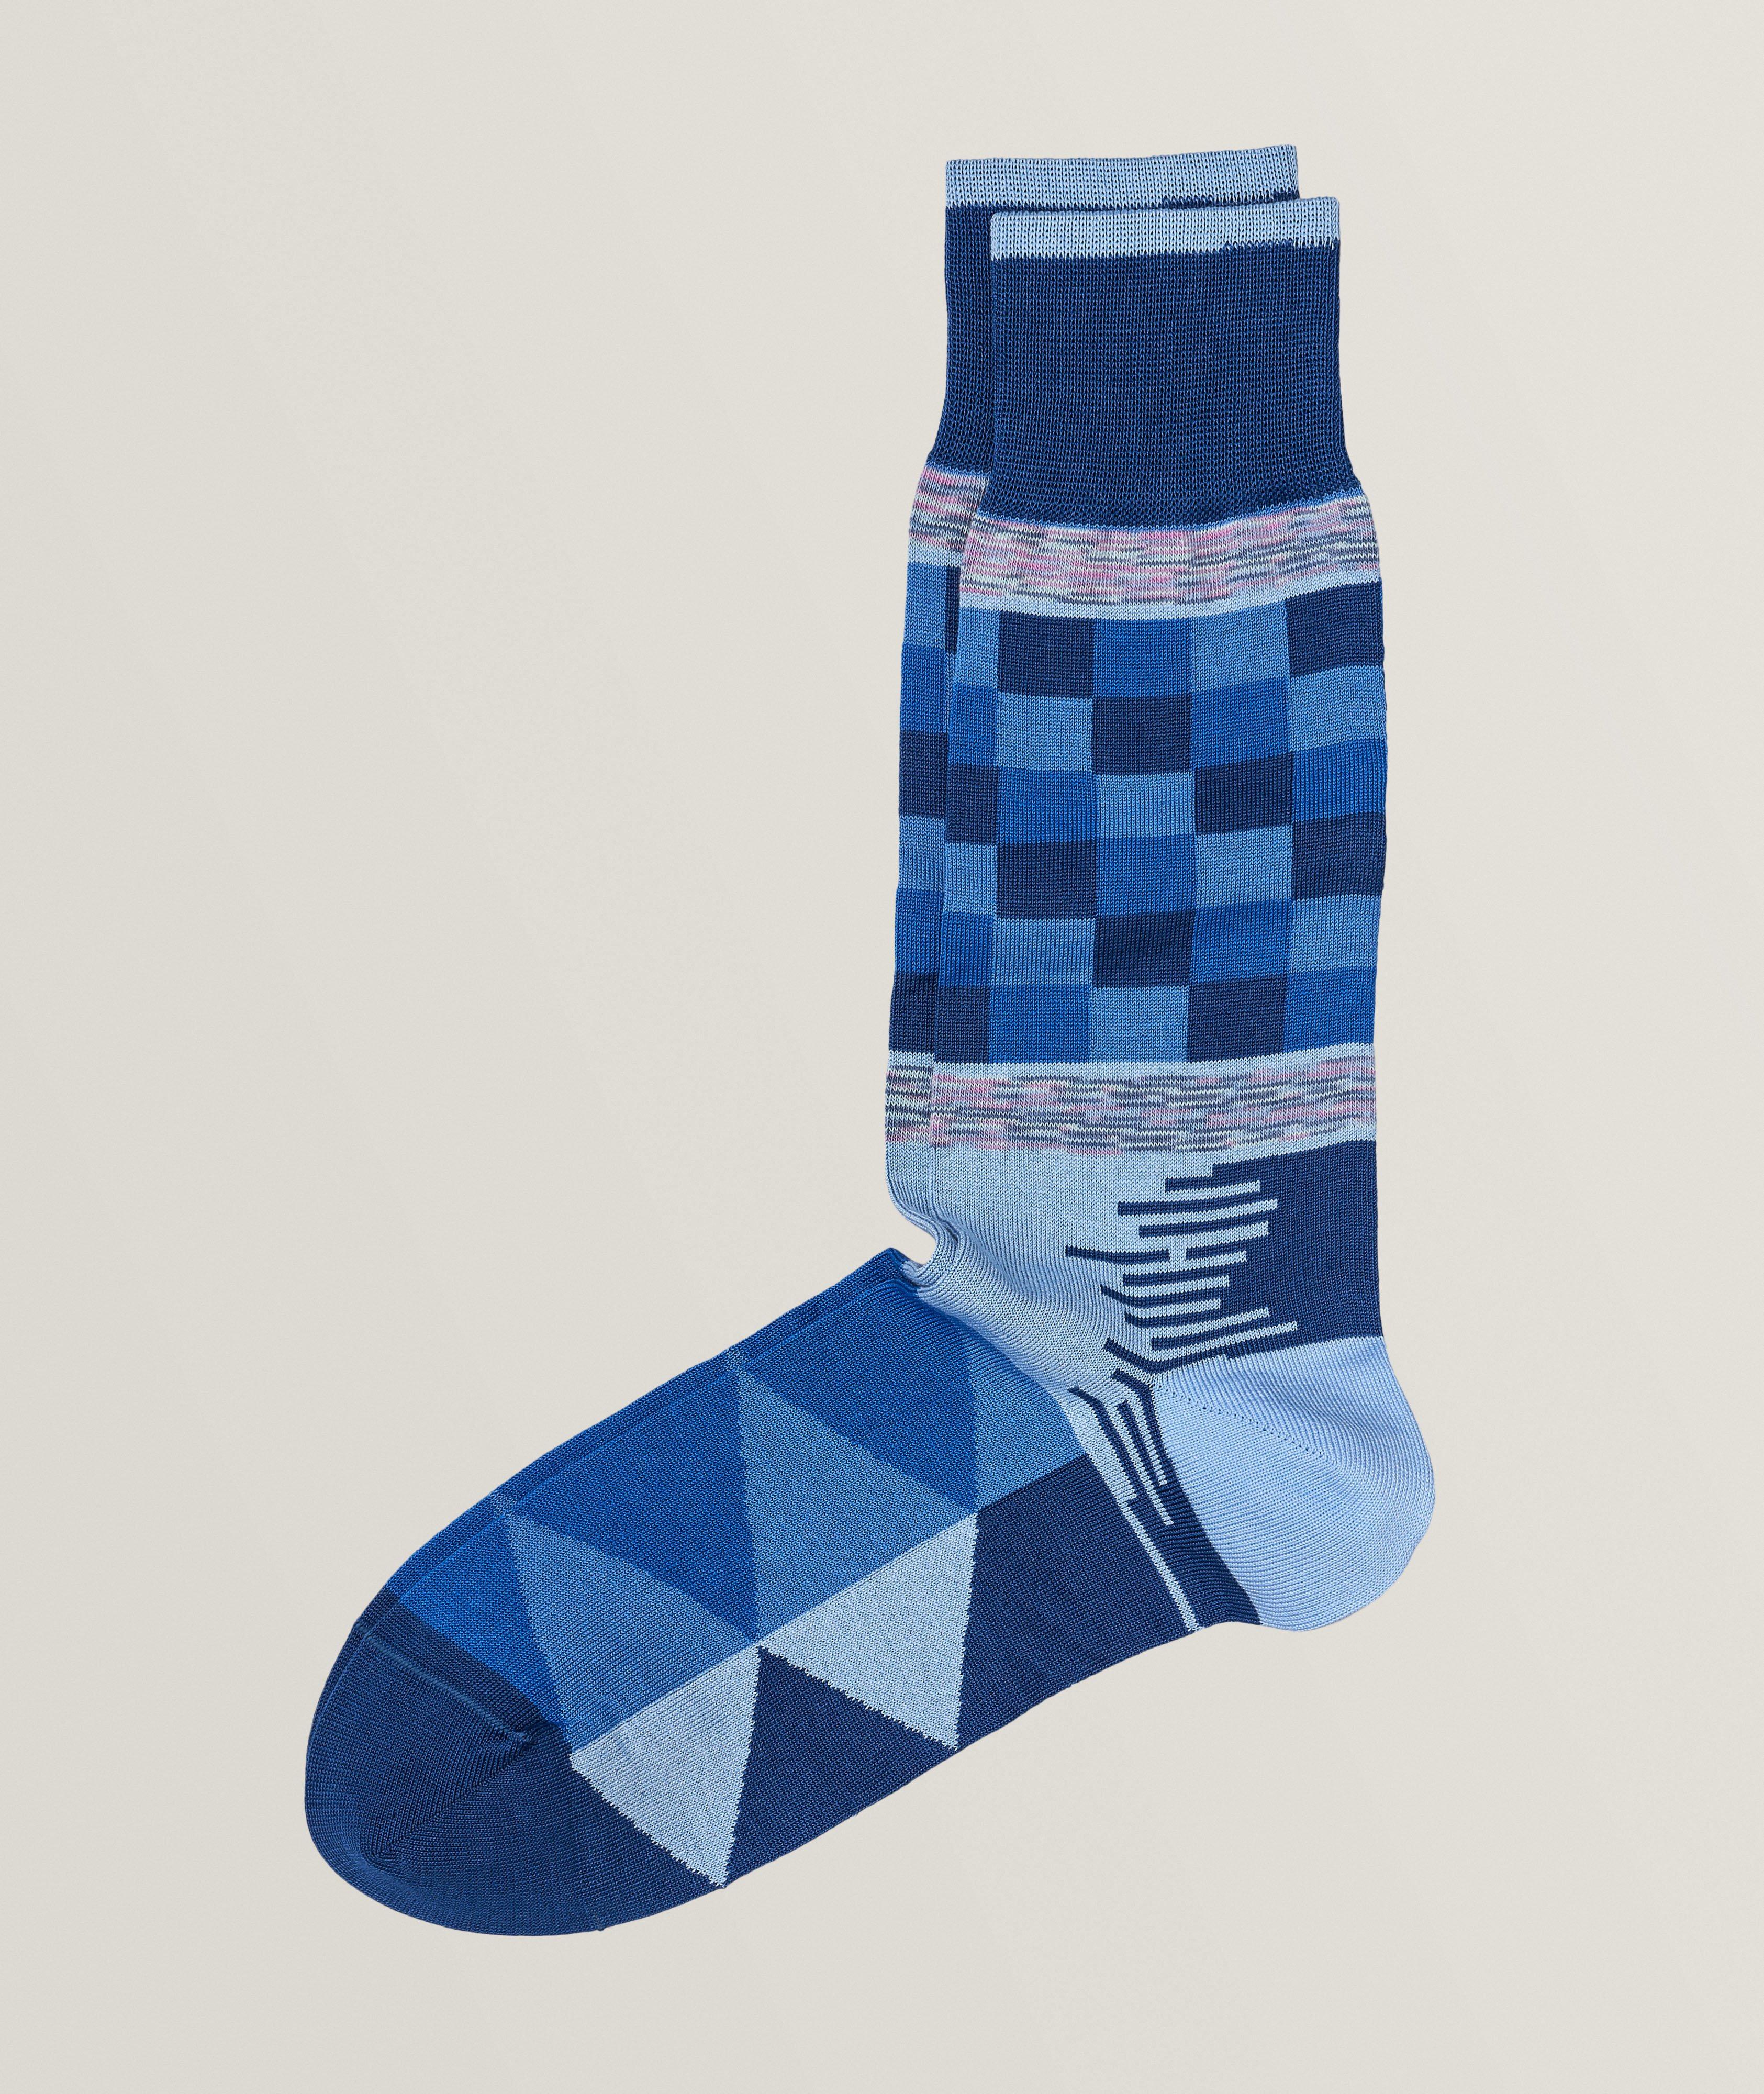 Grid Triangle Mercerised Cotton-Blend Dress Socks image 0